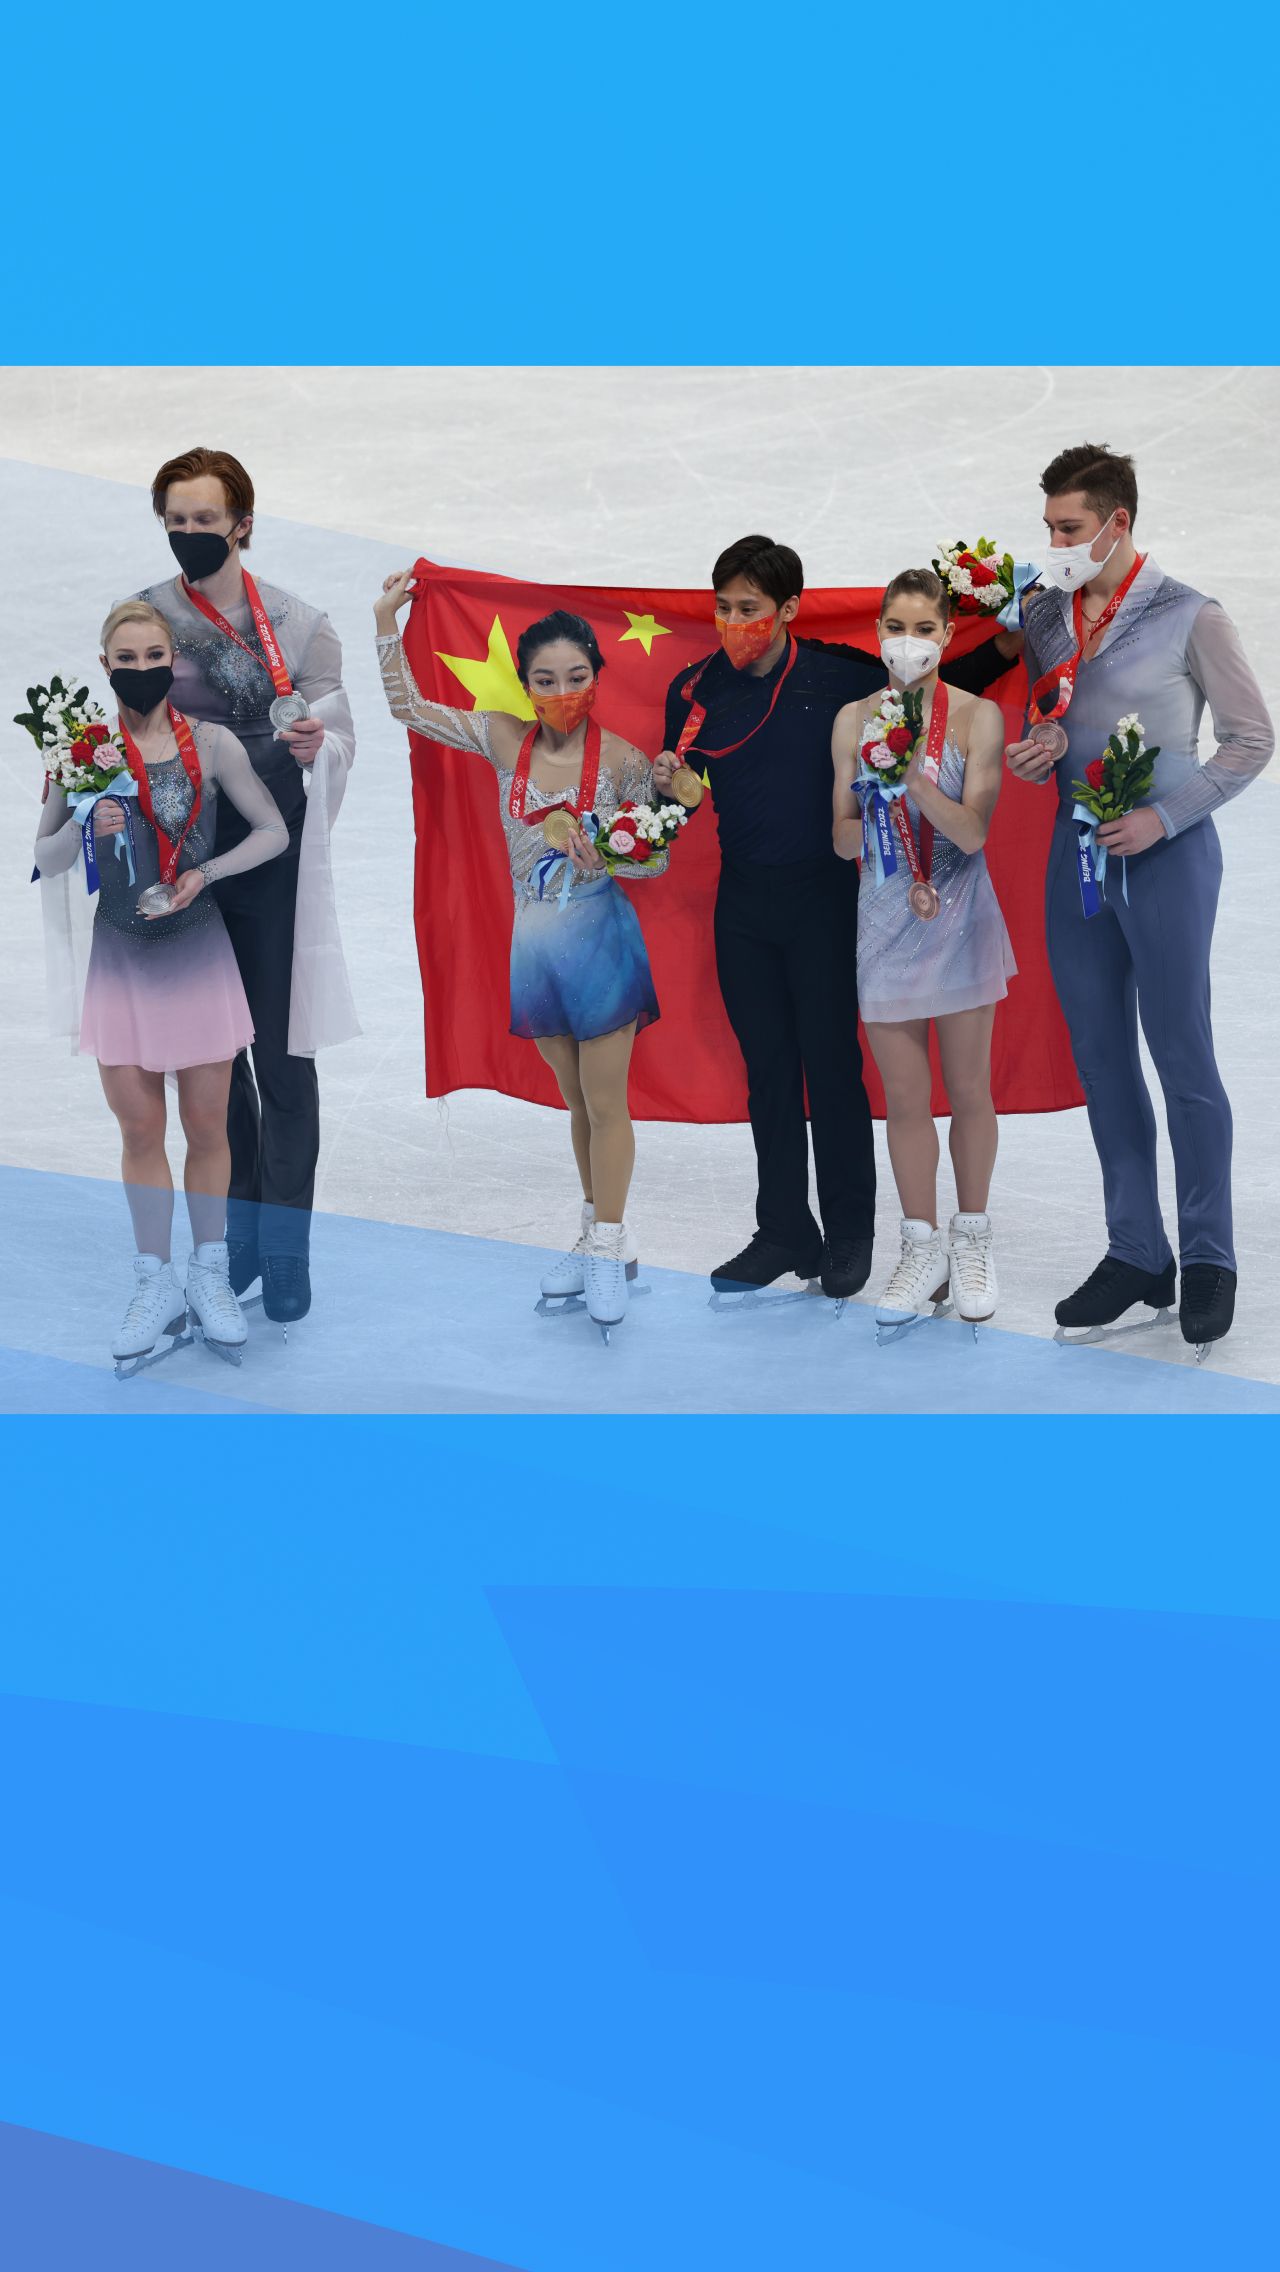 После завершения соревнований пар призёры сделали весёлое фото, поменявшись партнёрами. Суй встала с Морозовым, Мишина с Ханем, а Тарасова с Галлямовым.